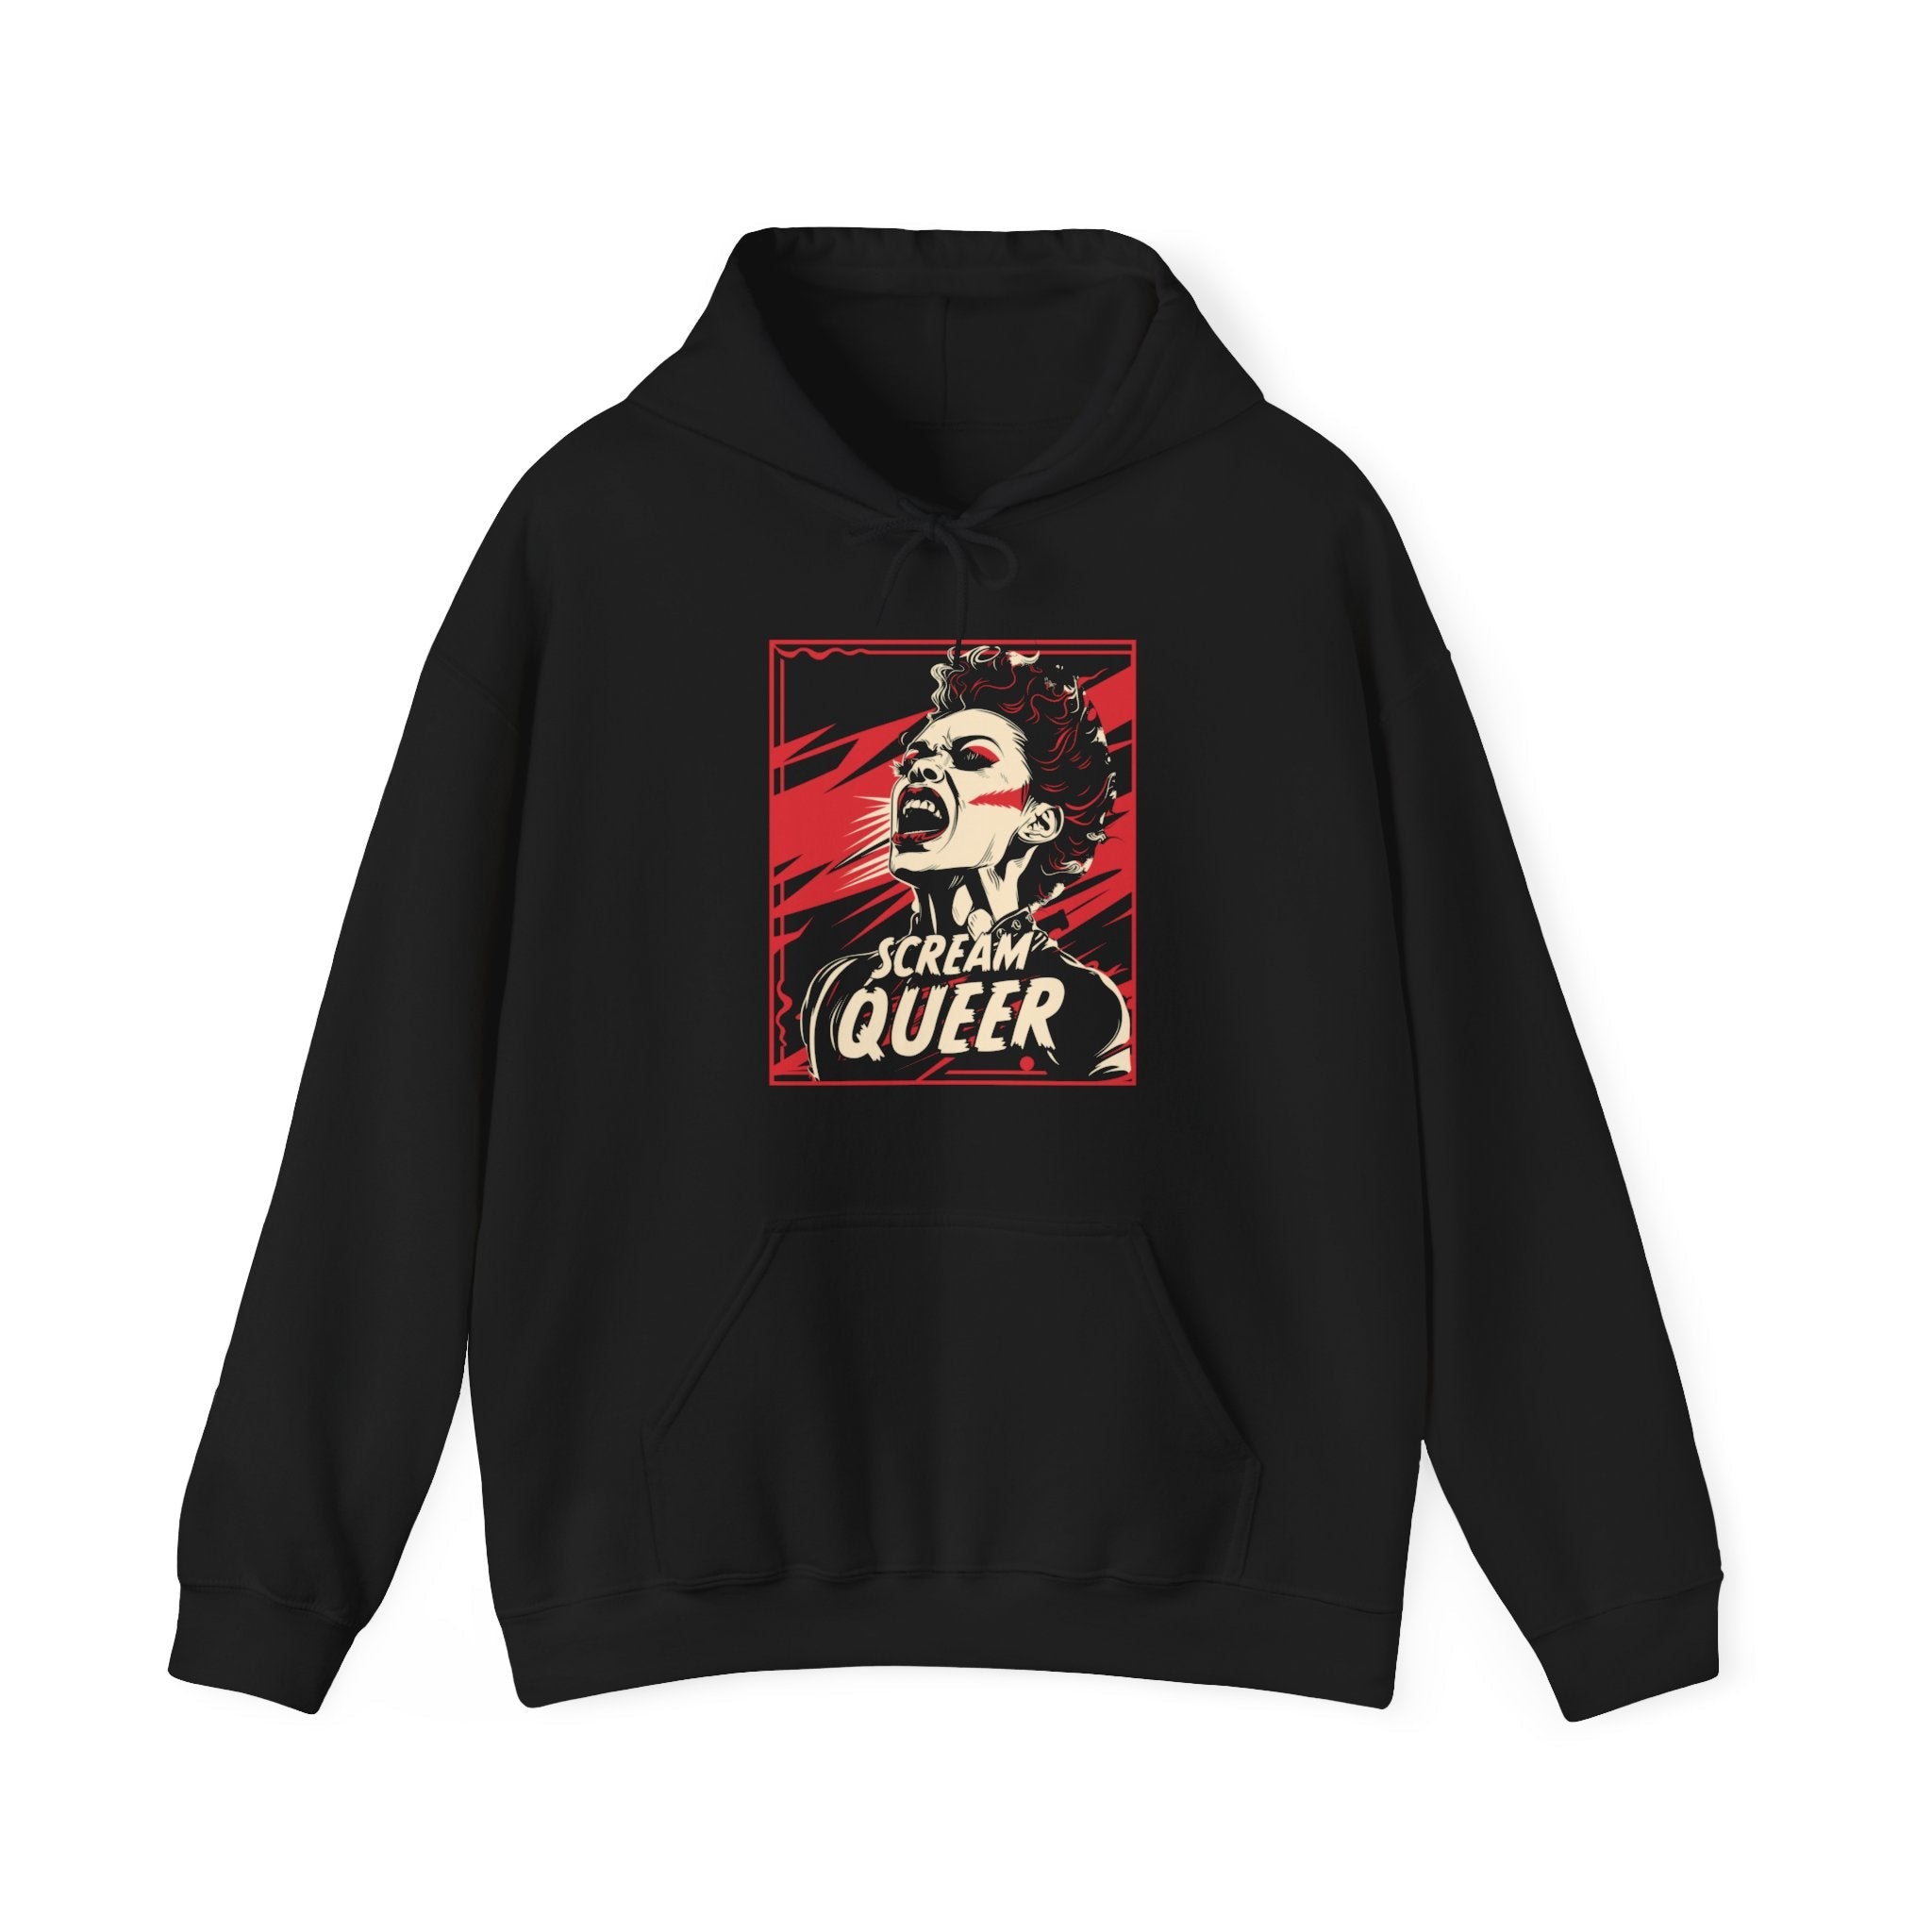 "Scream Queer" Hooded Sweatshirt - Hunky Tops